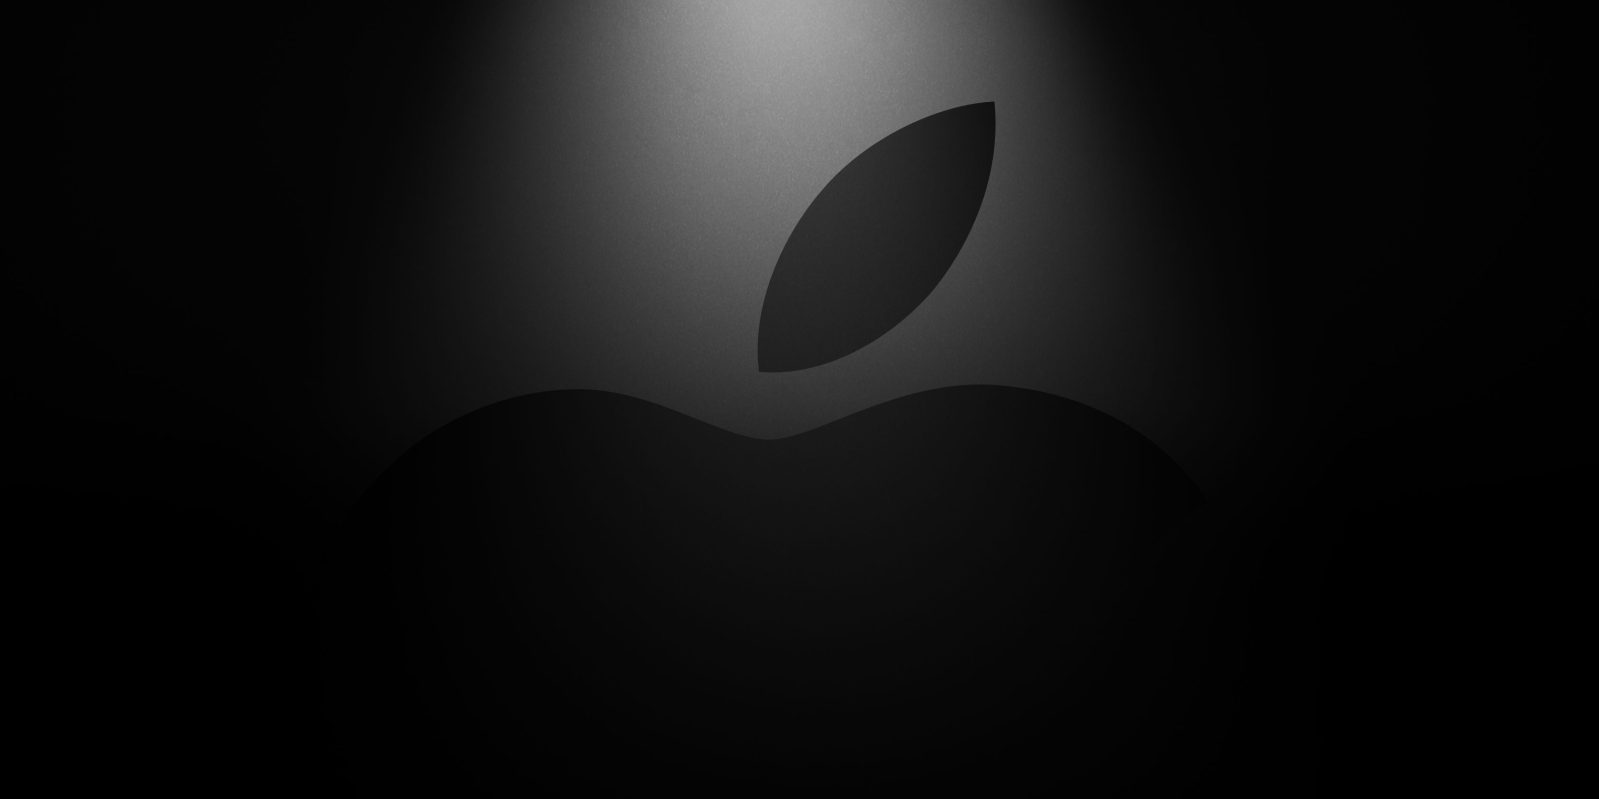 25 Mart geldi! Apple bugün neler tanıtacak?